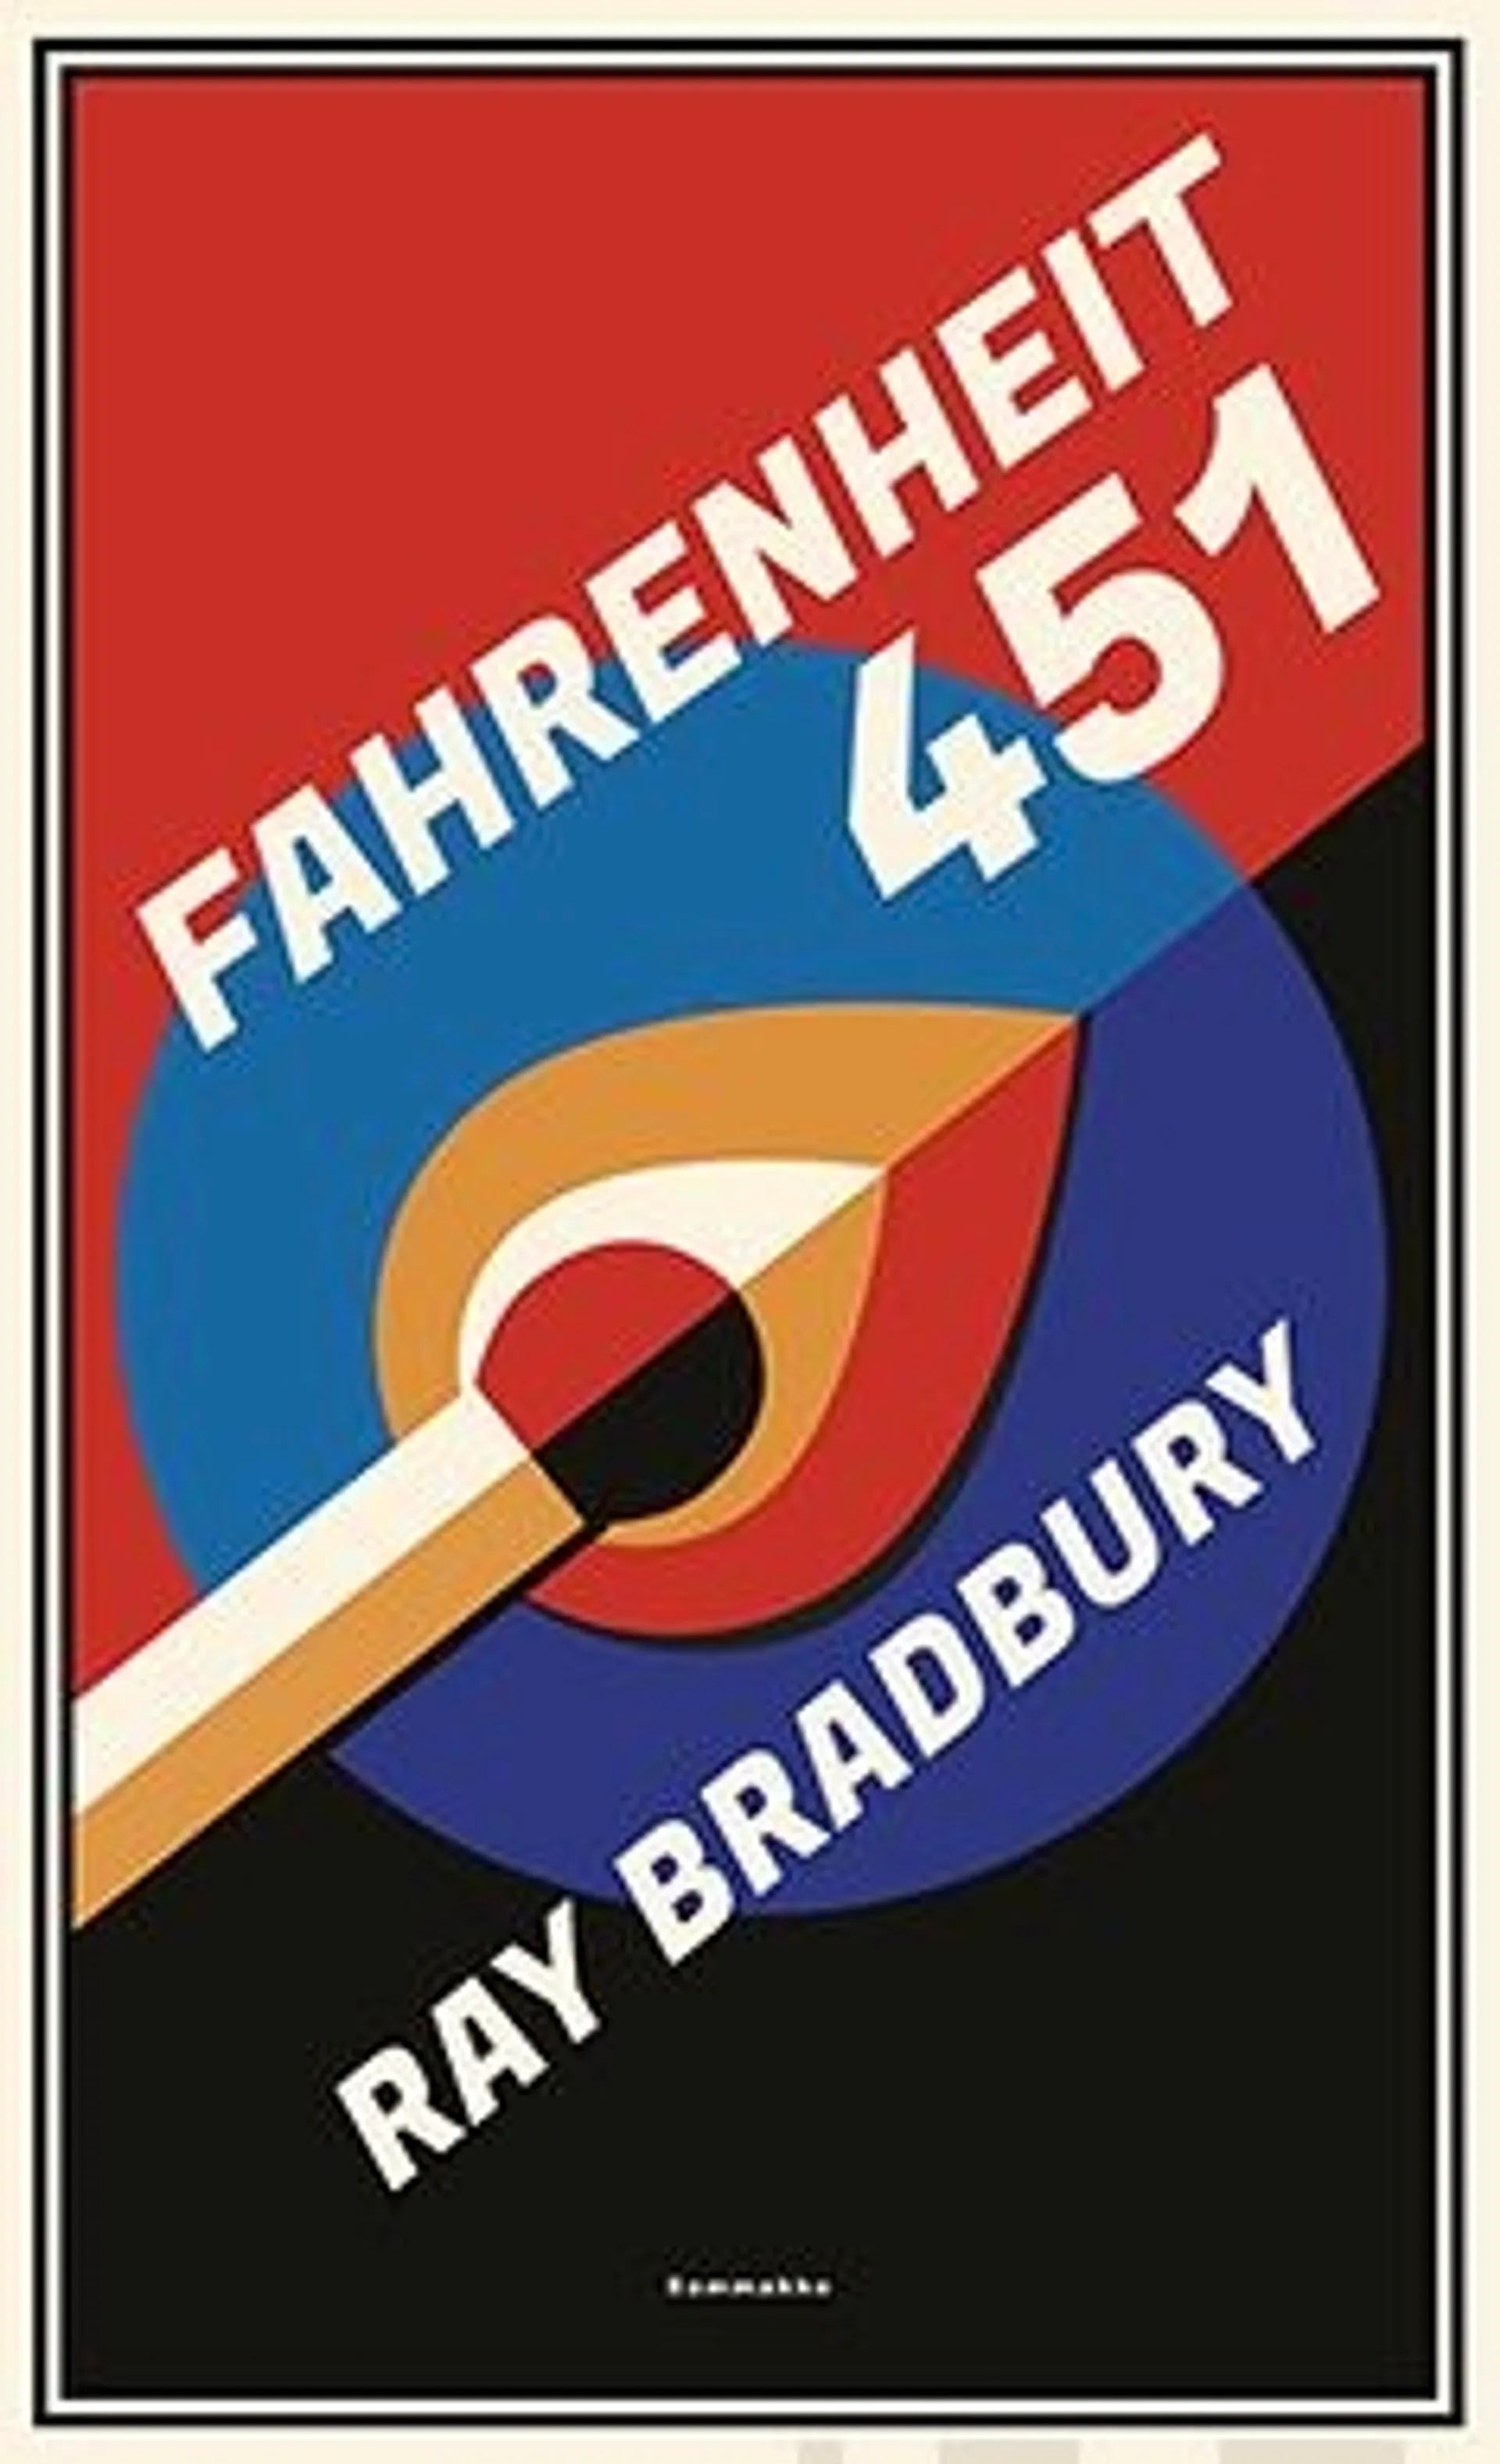 Bradbury, Fahrenheit 451